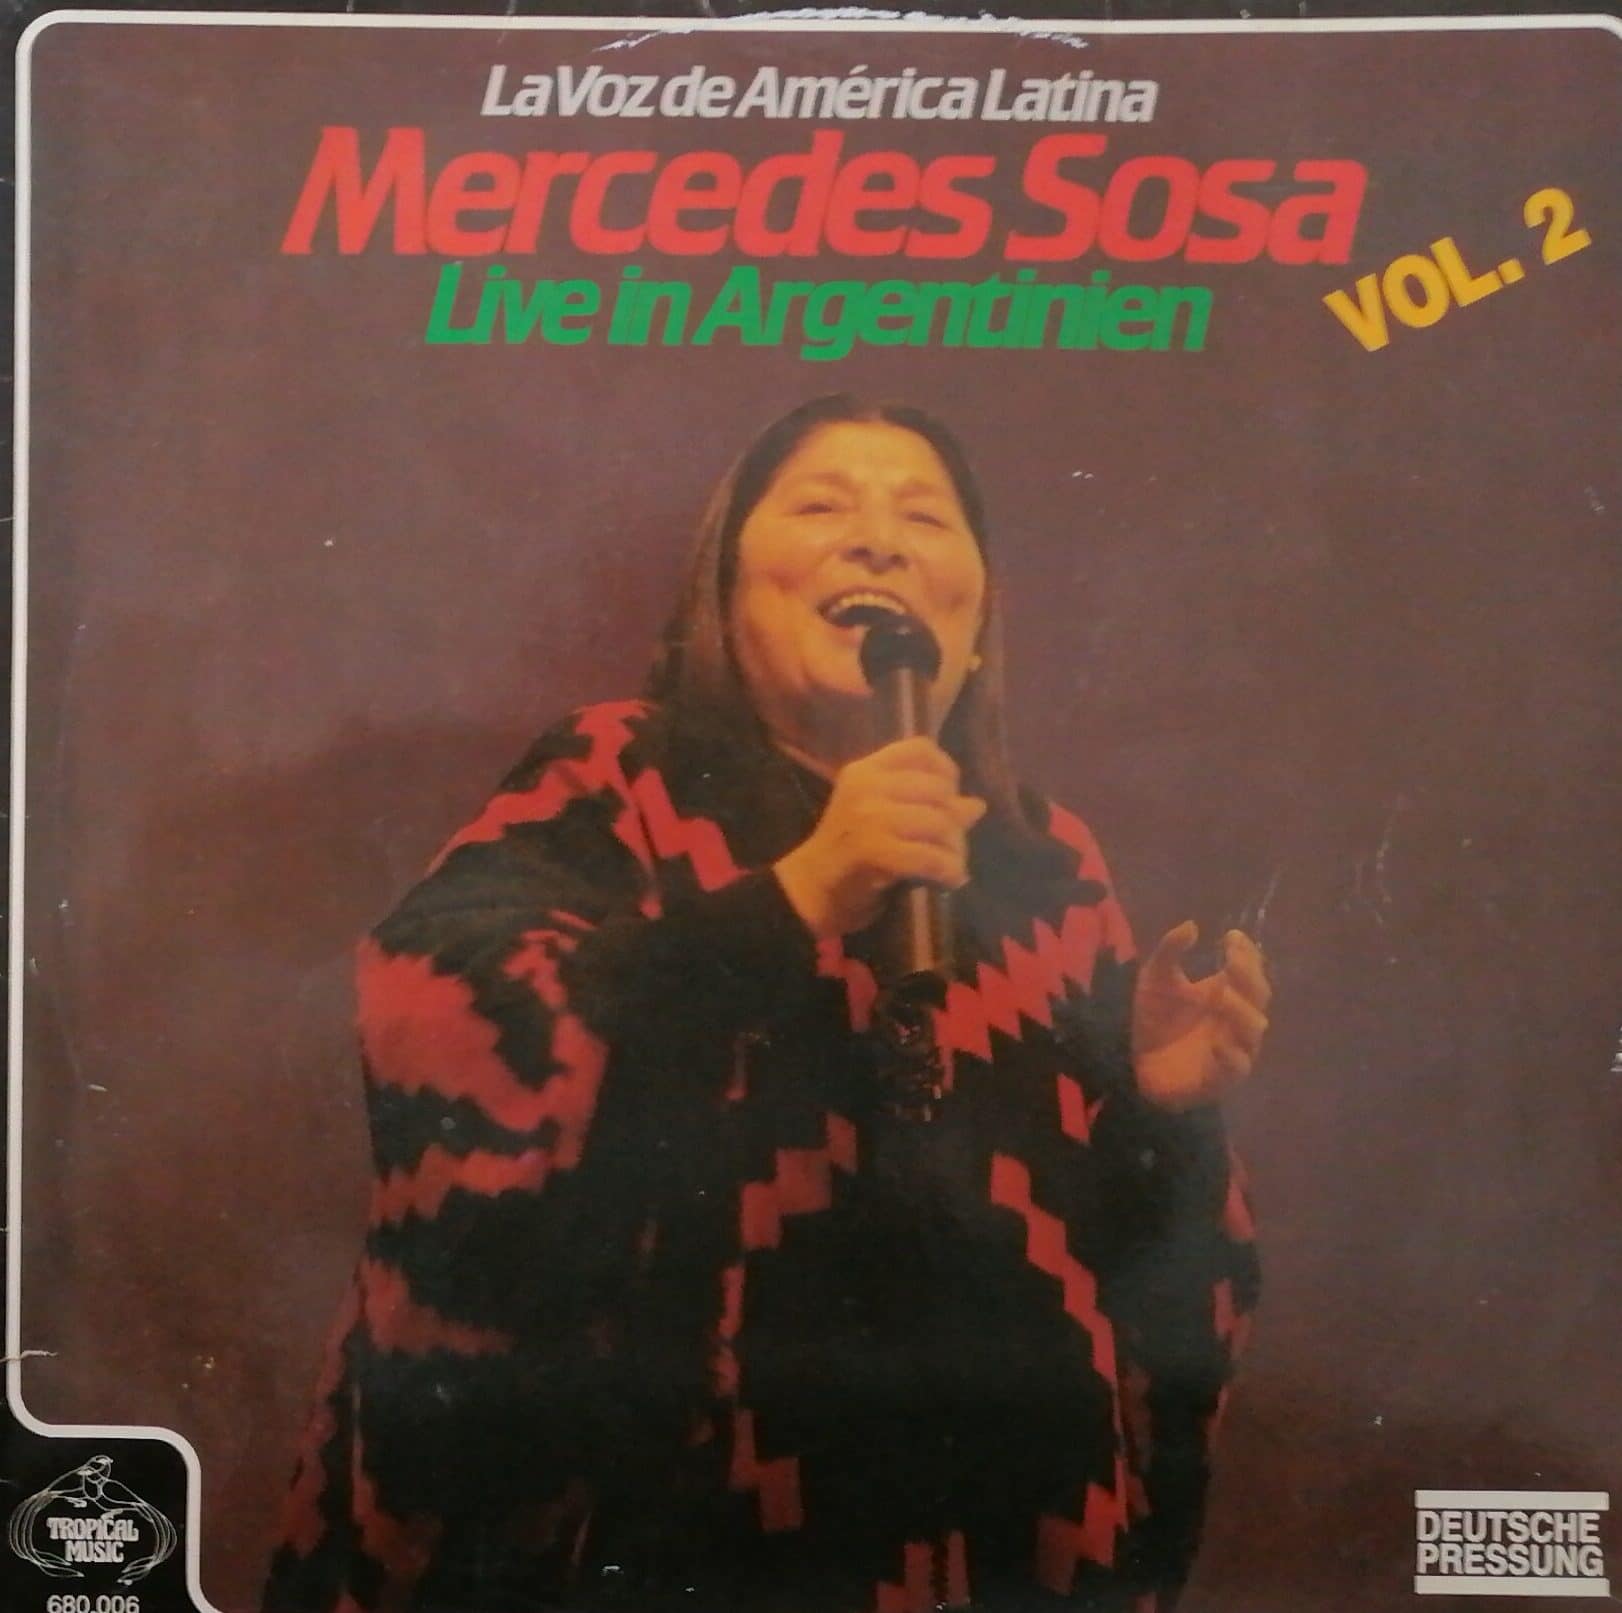 Gramofonska ploča Mercedes Sosa Live In Argentinien (Vol. 2) 680006